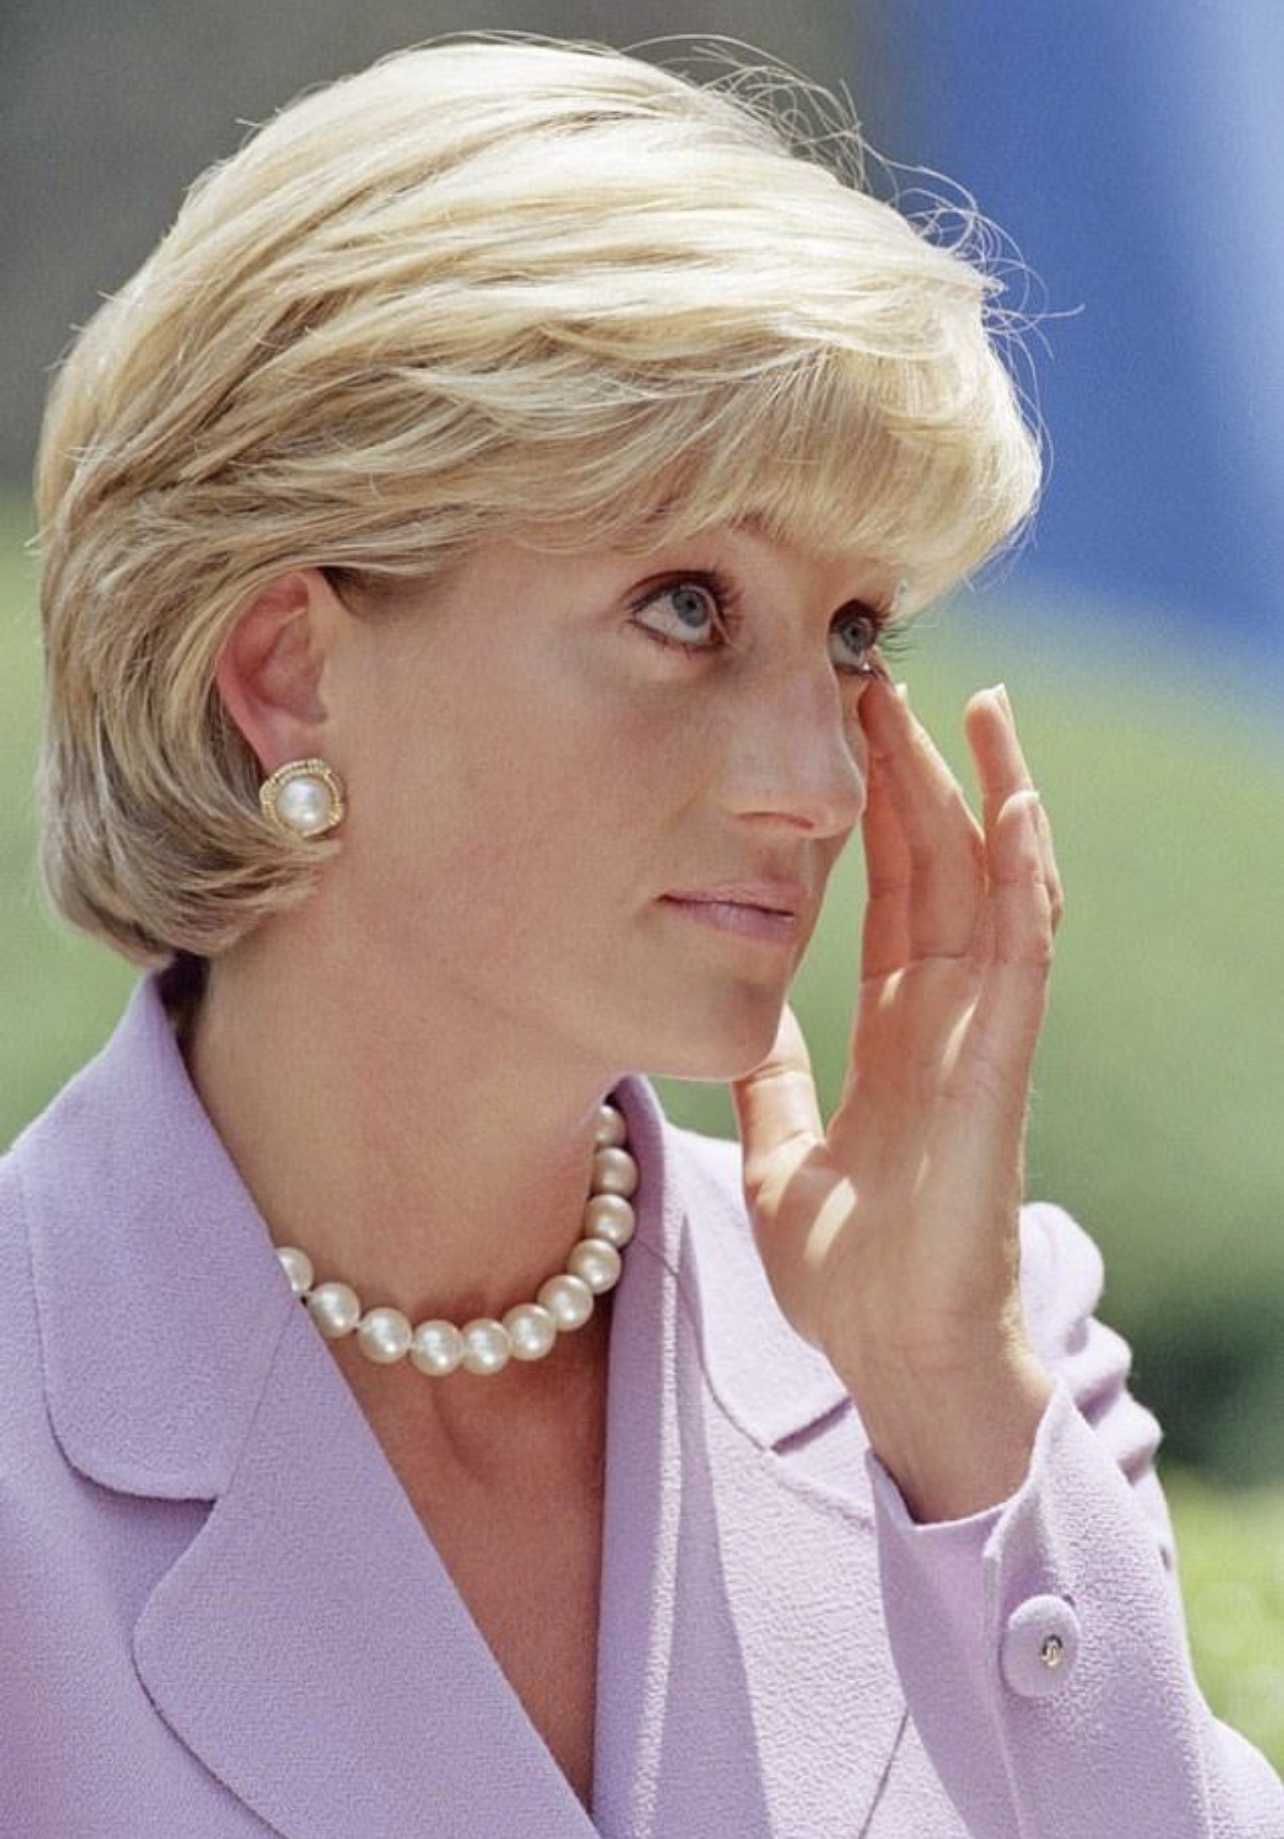 Πριγκίπισσα Diana: Η ιστορία πίσω από το θρυλικό κούρεμά της